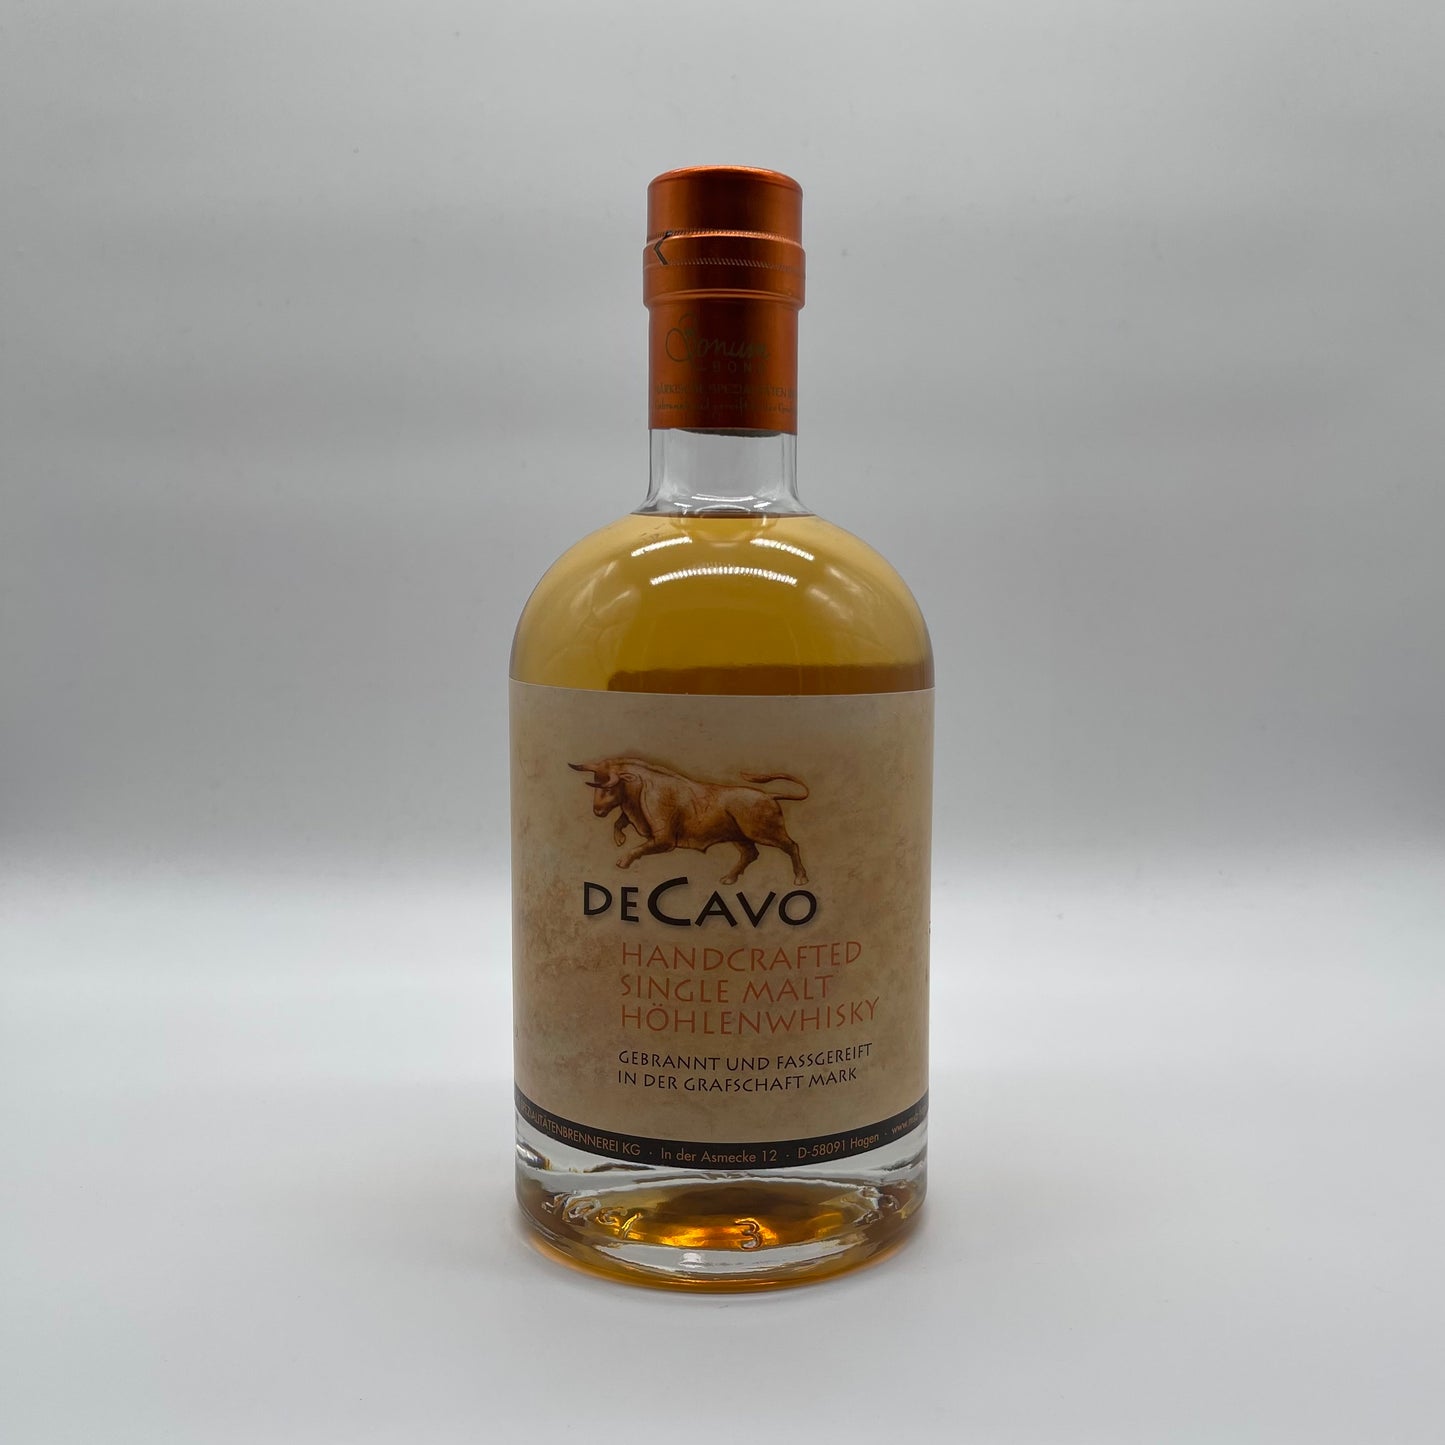 De Cavo Single Malt Whisky Single Cask Höhlen Whisky